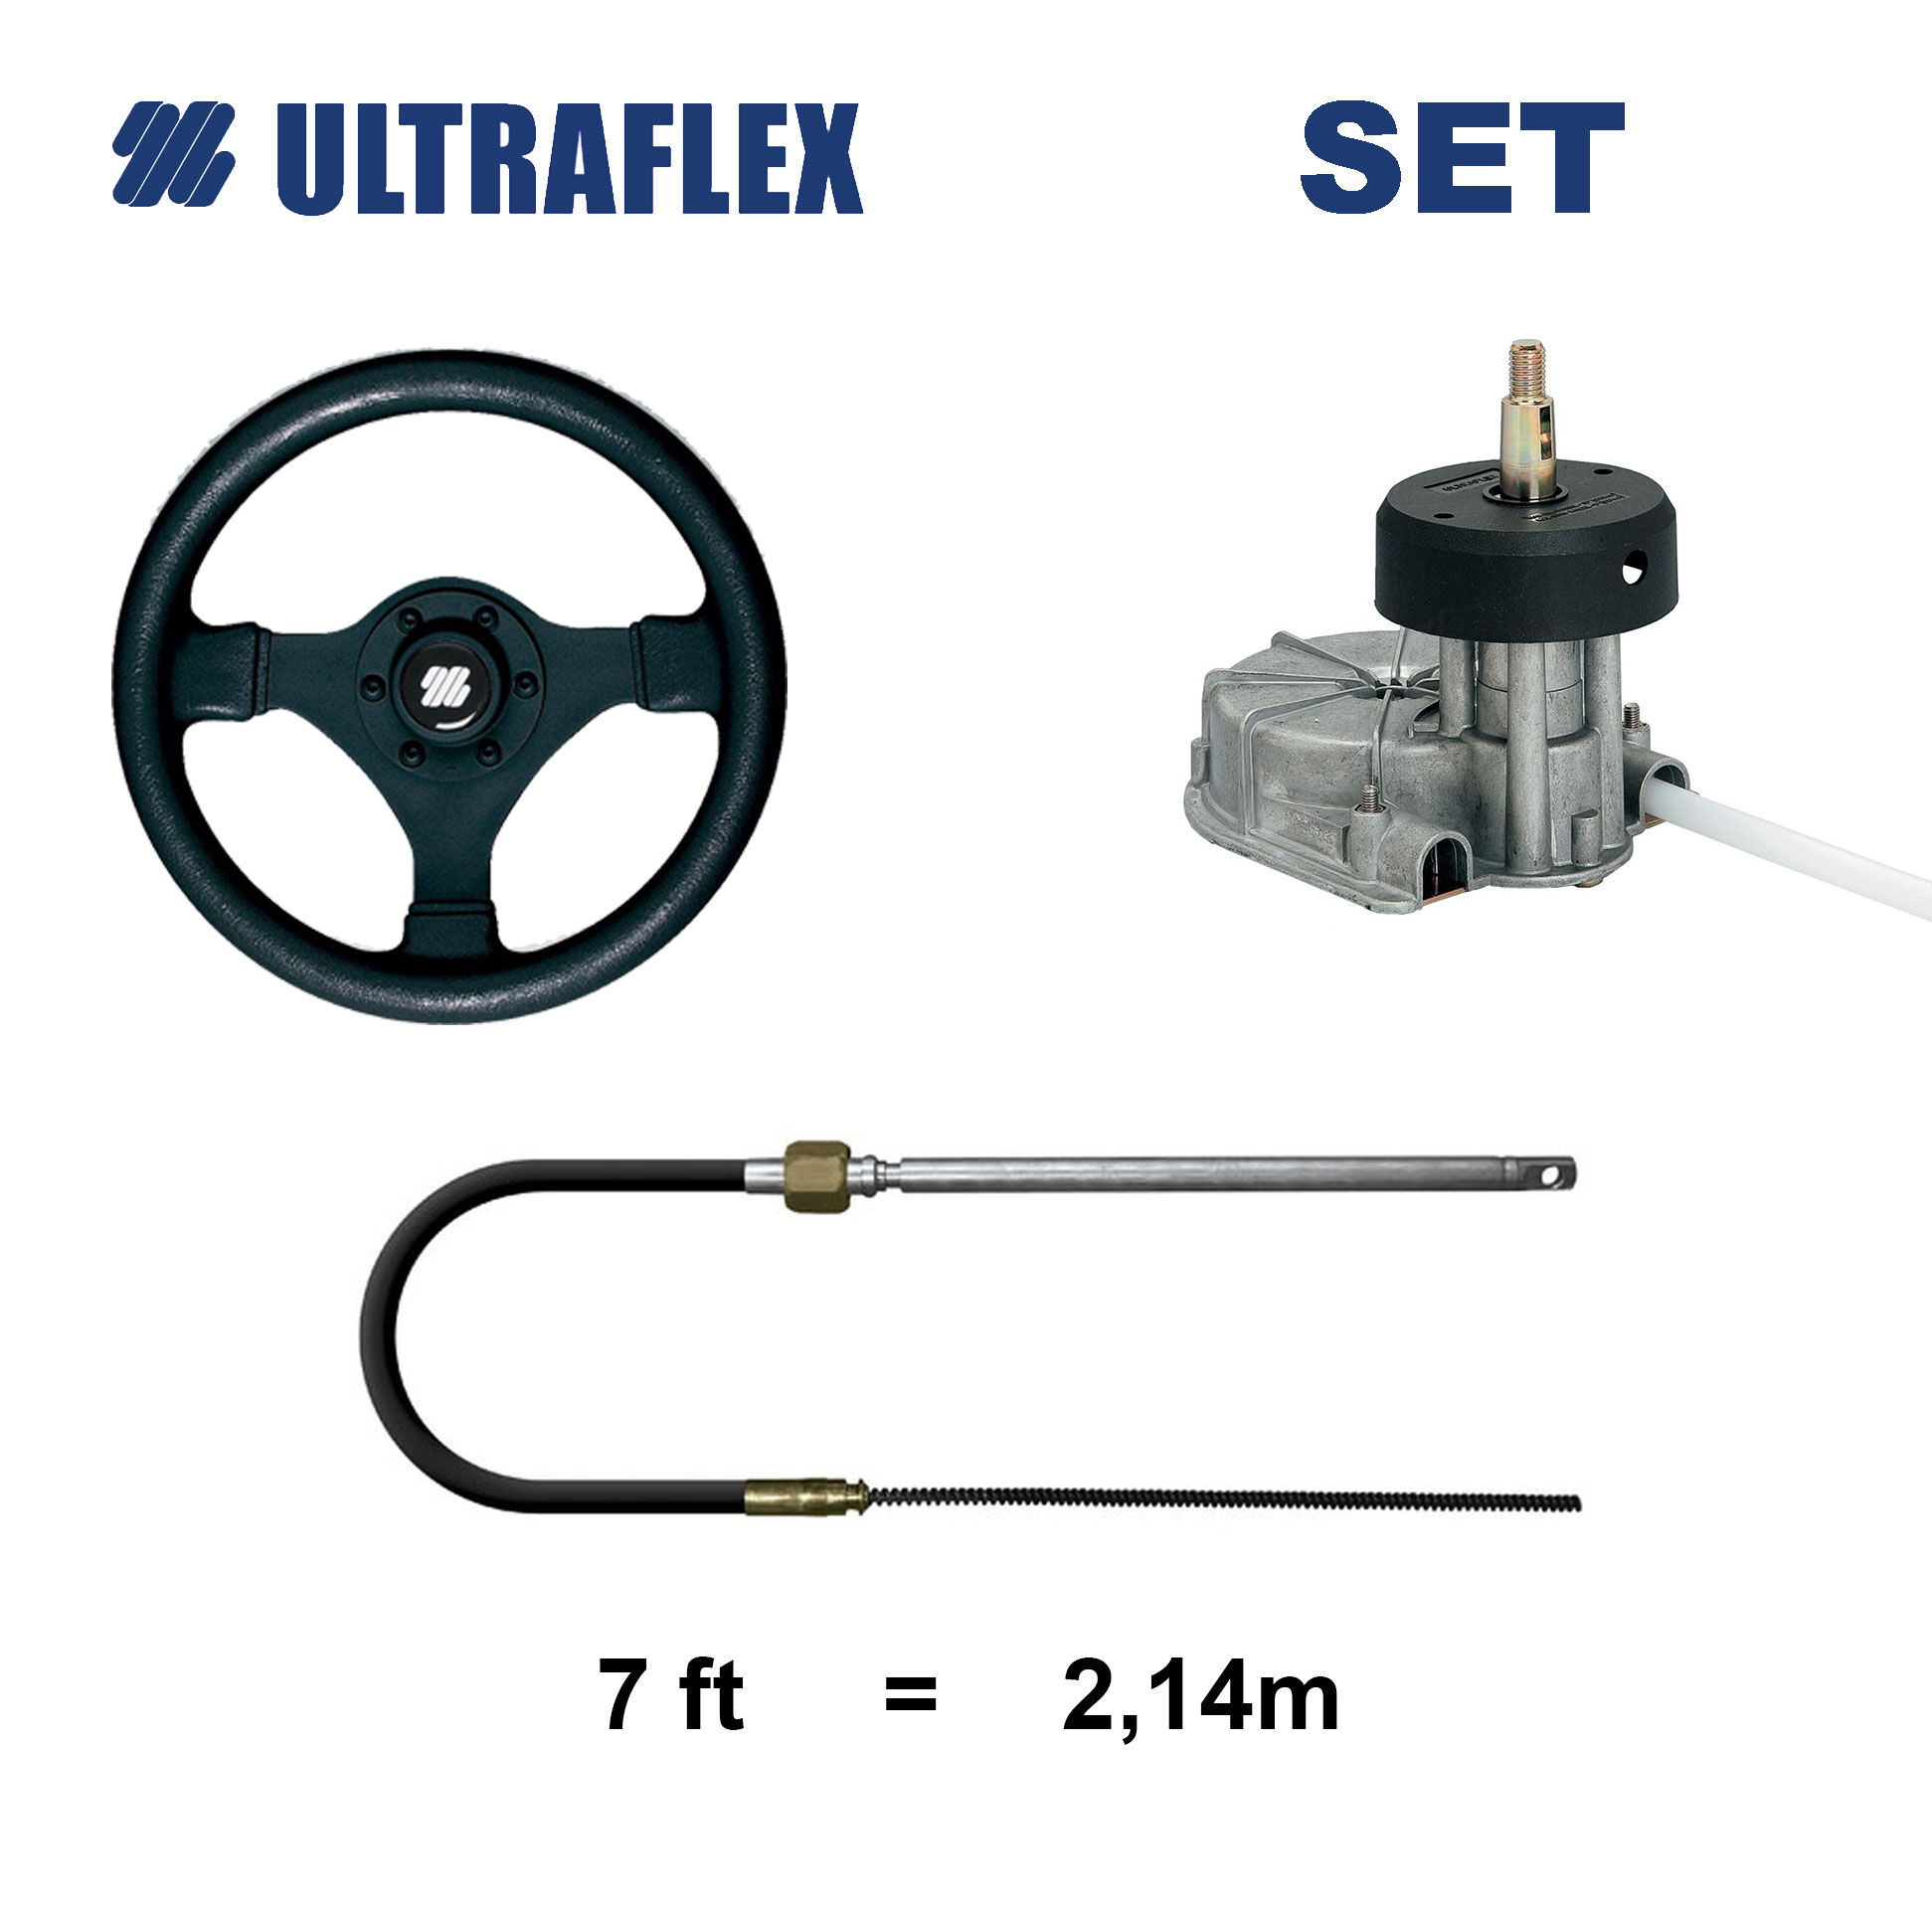 Ultraflex T85 Steuersystem Set mit V45 Steuerrad und 7 Fuß Kabel